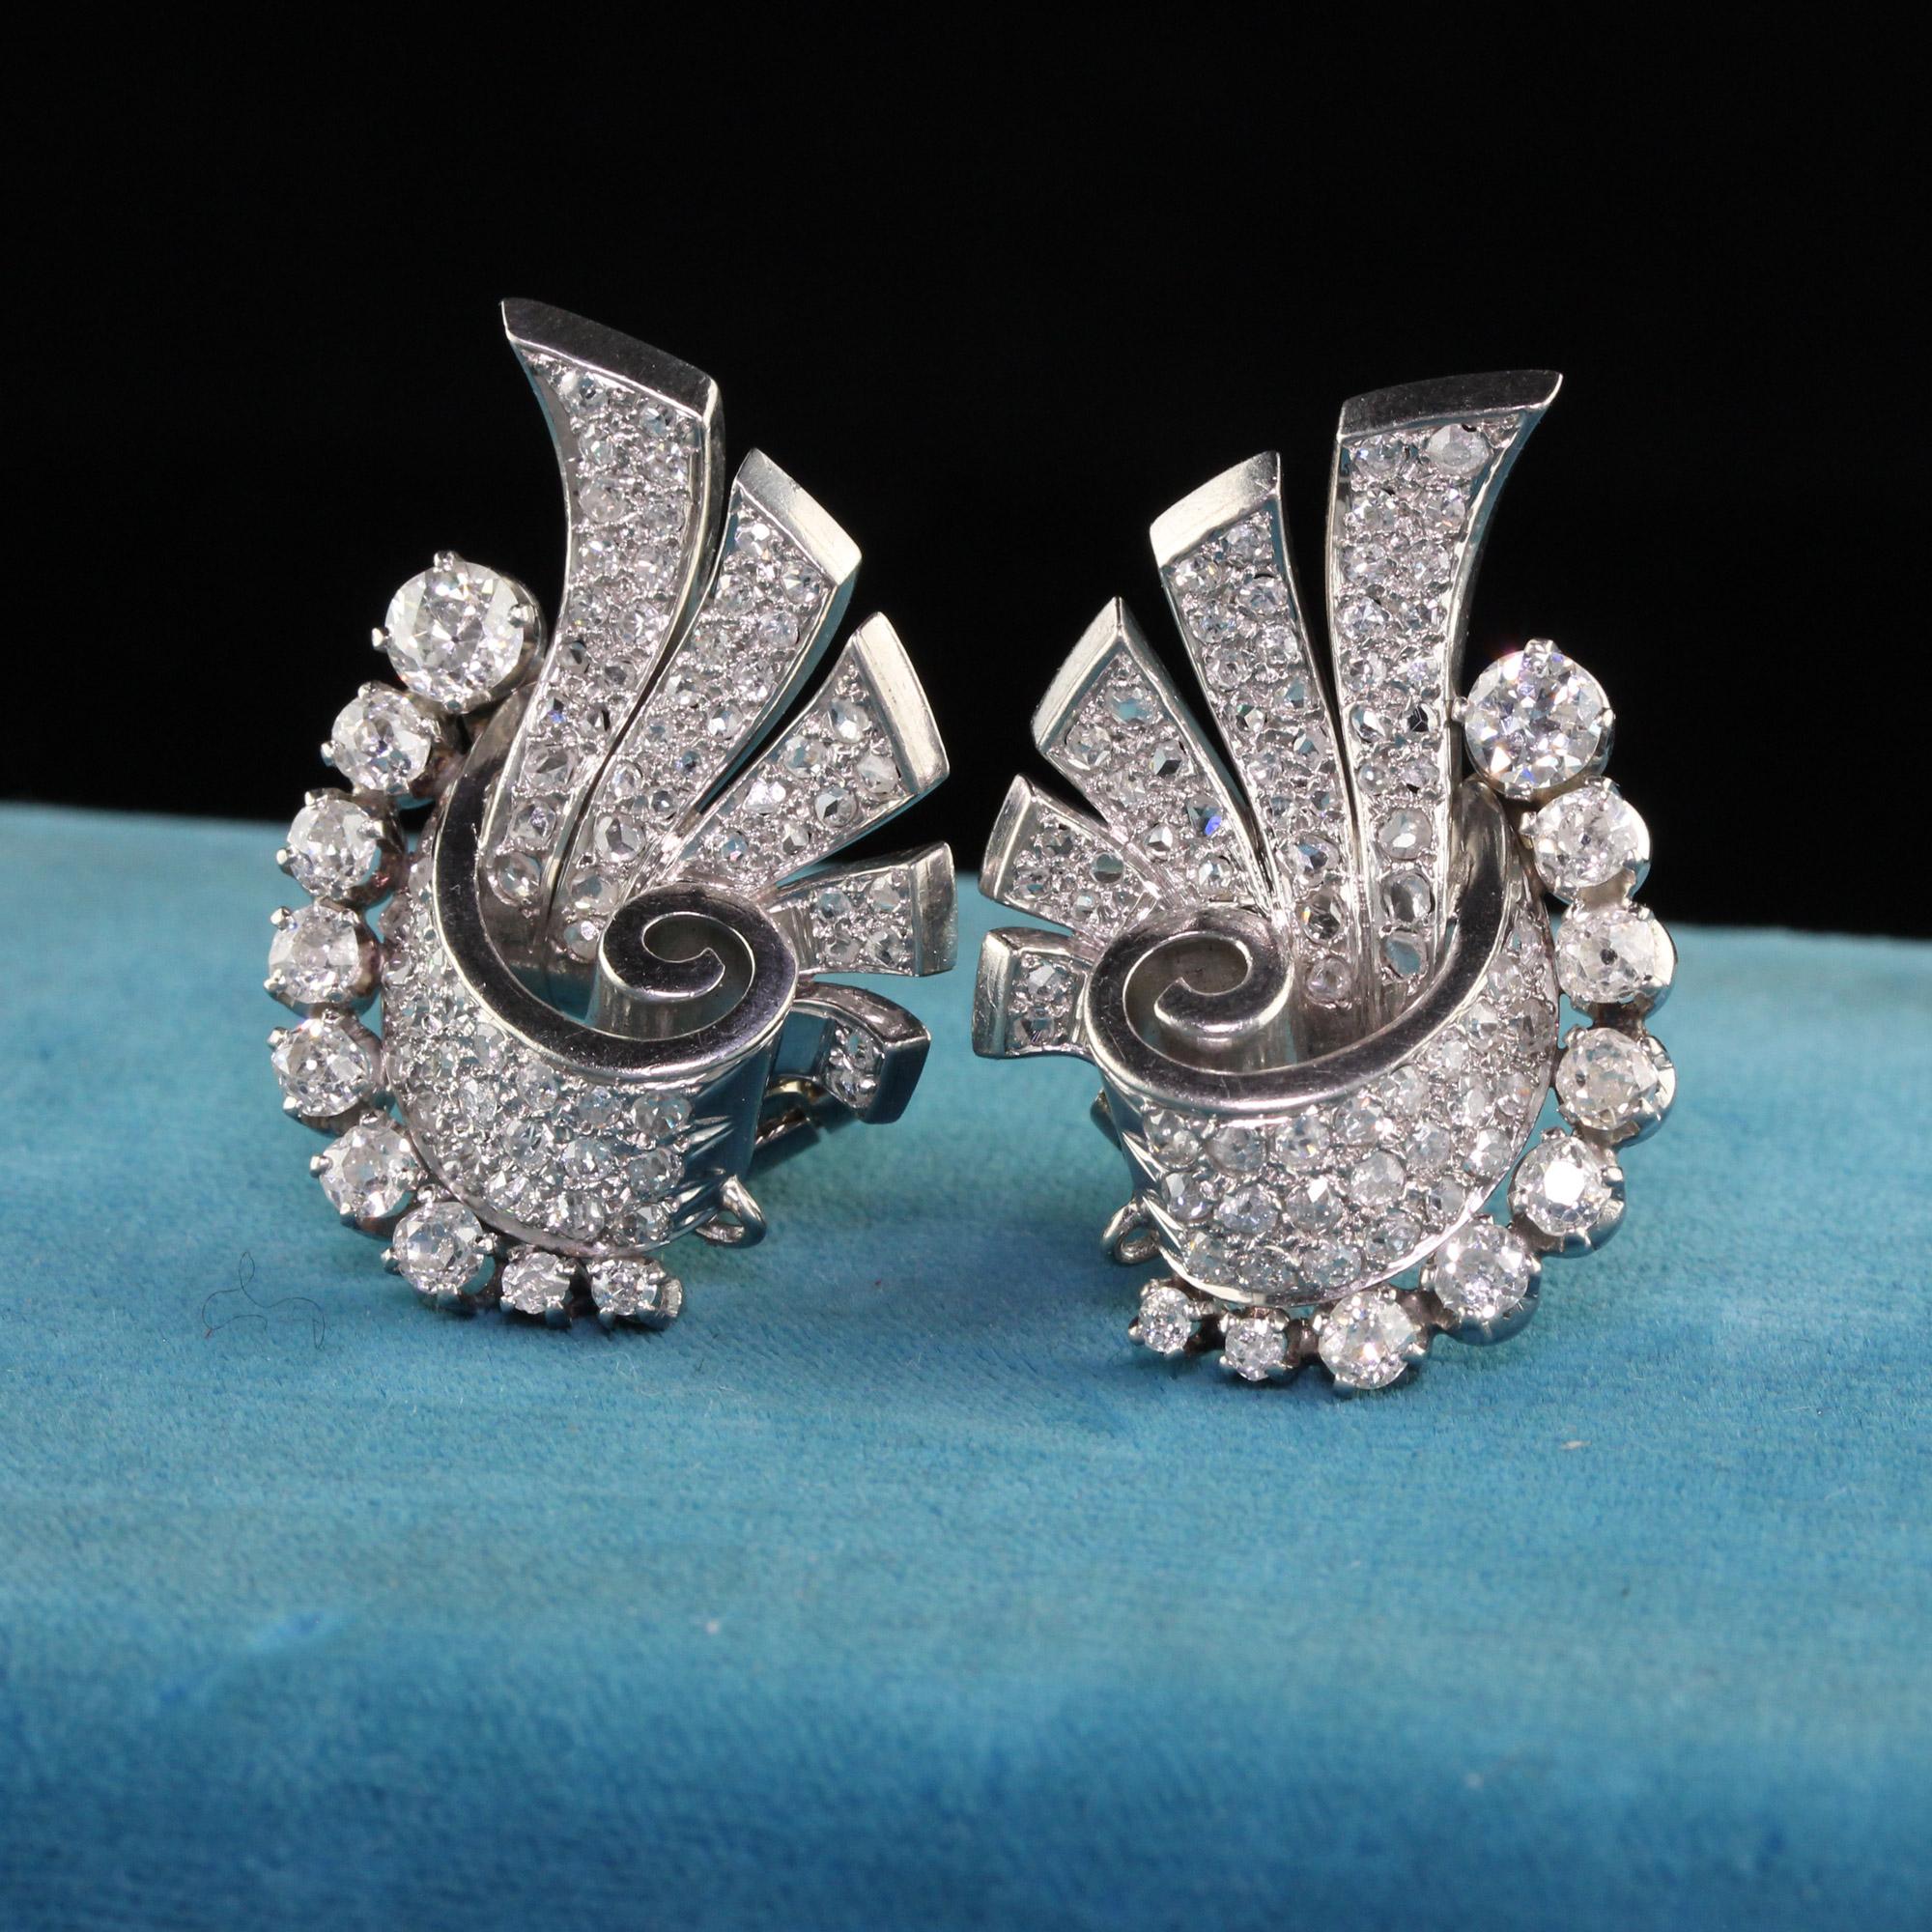 Boucles d'oreilles en platine Art Déco antique avec diamants taille ancienne et taille rose. Cette magnifique paire de boucles d'oreilles est réalisée en platine et en or blanc 18 carats. Les boucles d'oreilles sont ornées de diamants taille